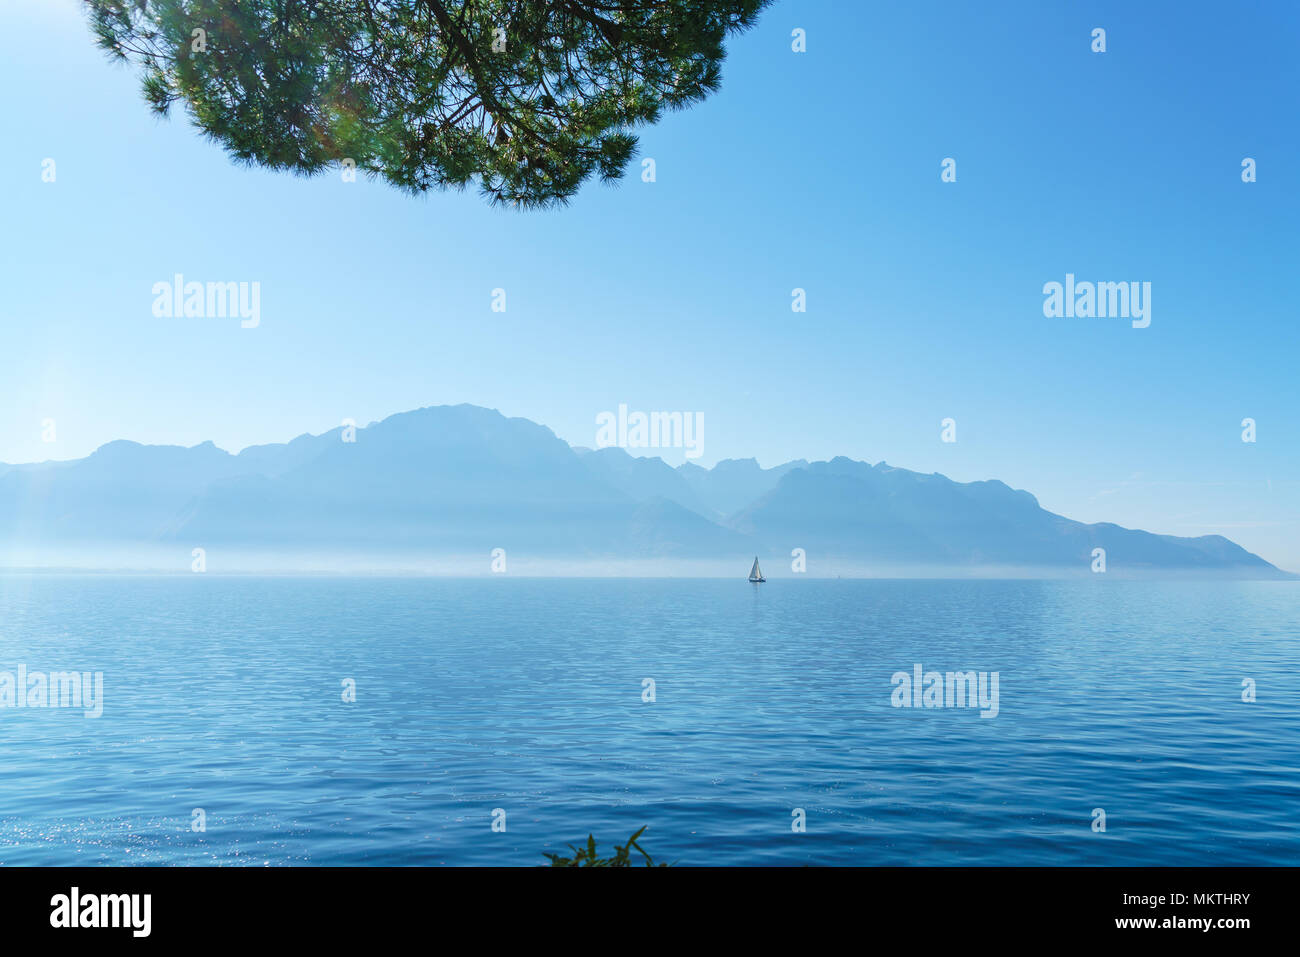 Ciudad balneario suiza fotografías e imágenes de alta resolución - Página 3  - Alamy